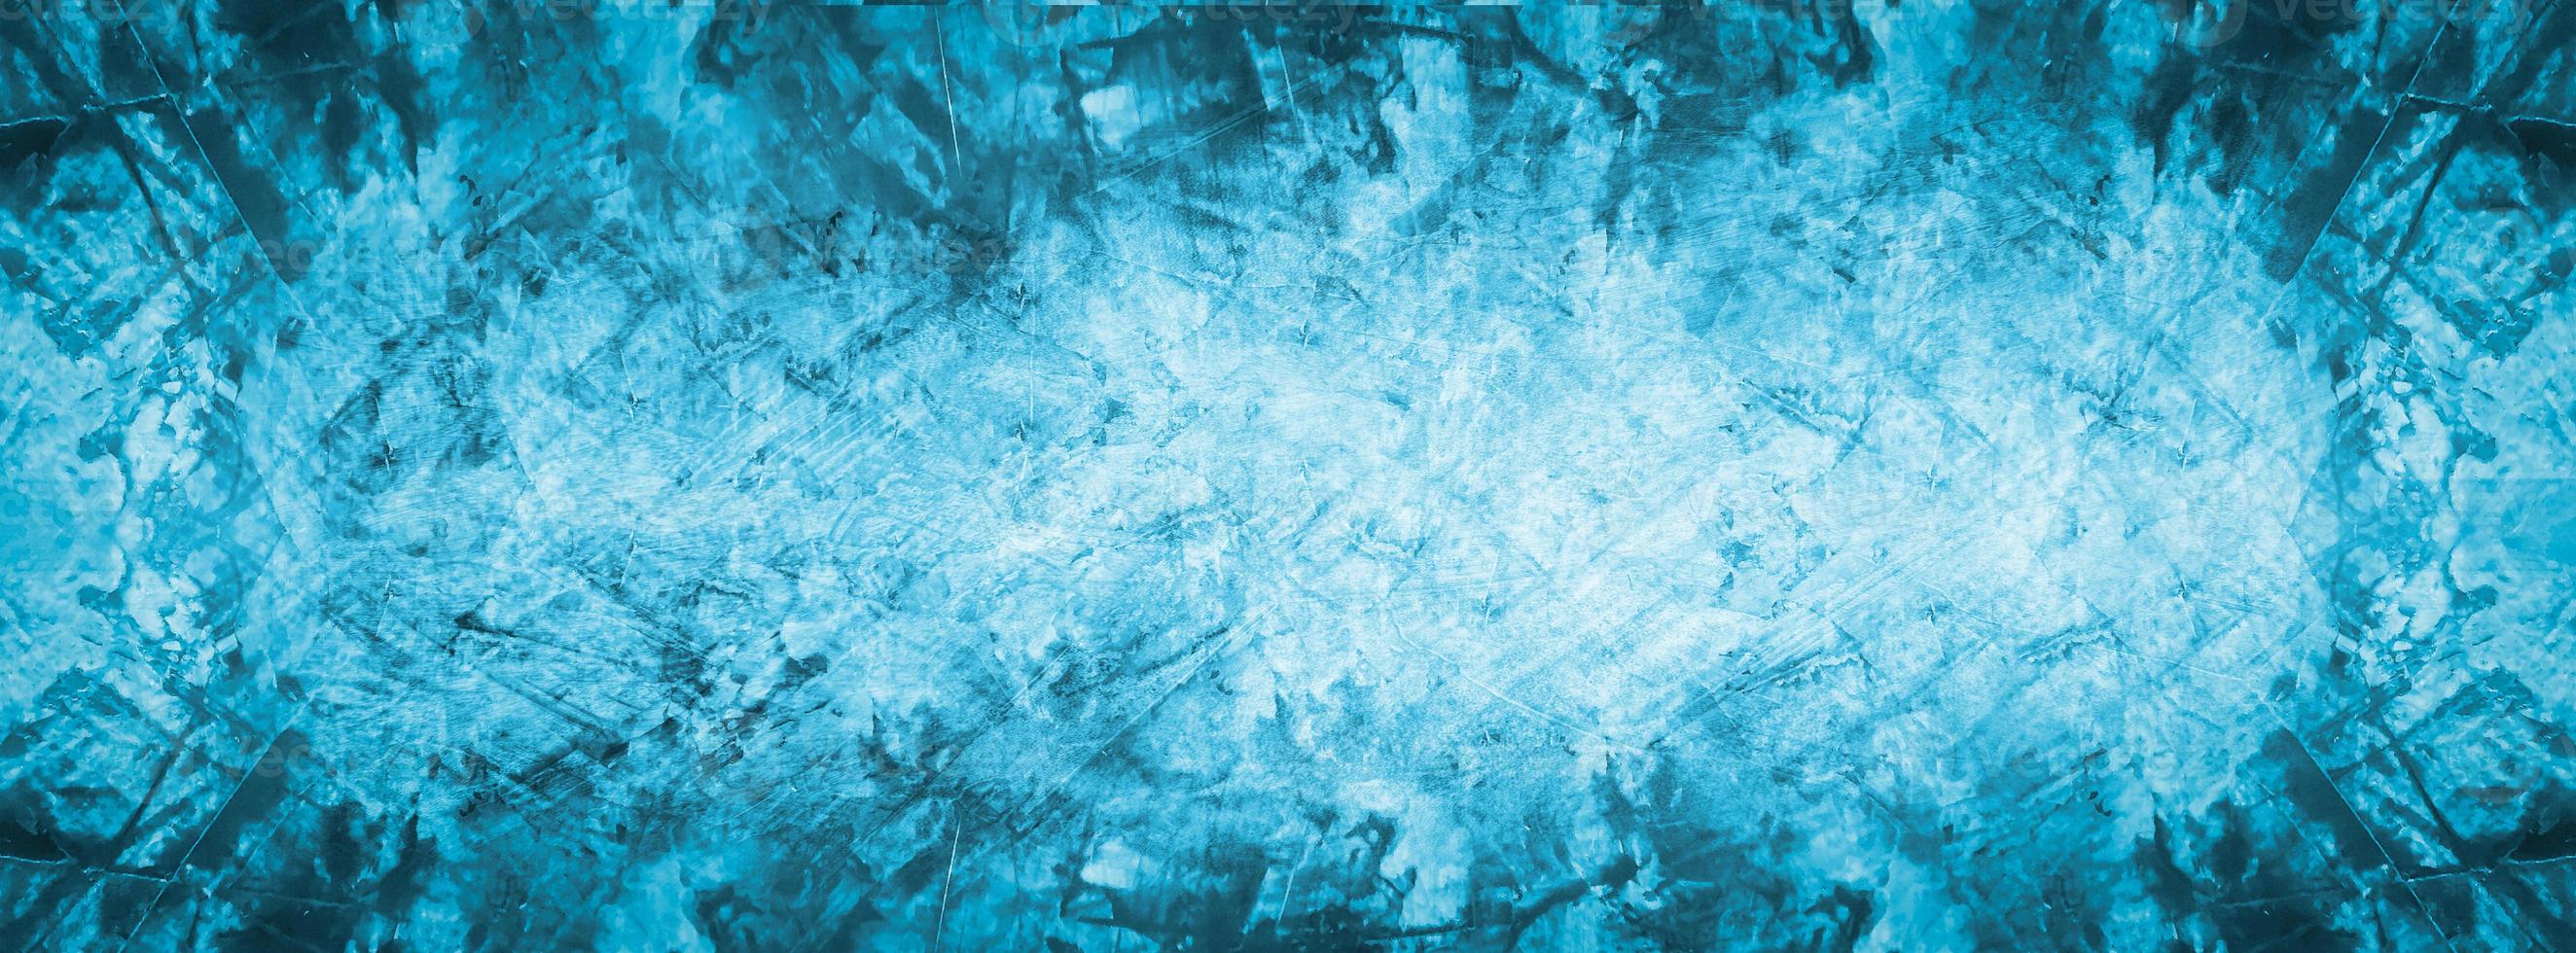 blauwe achtergrond met textuur foto